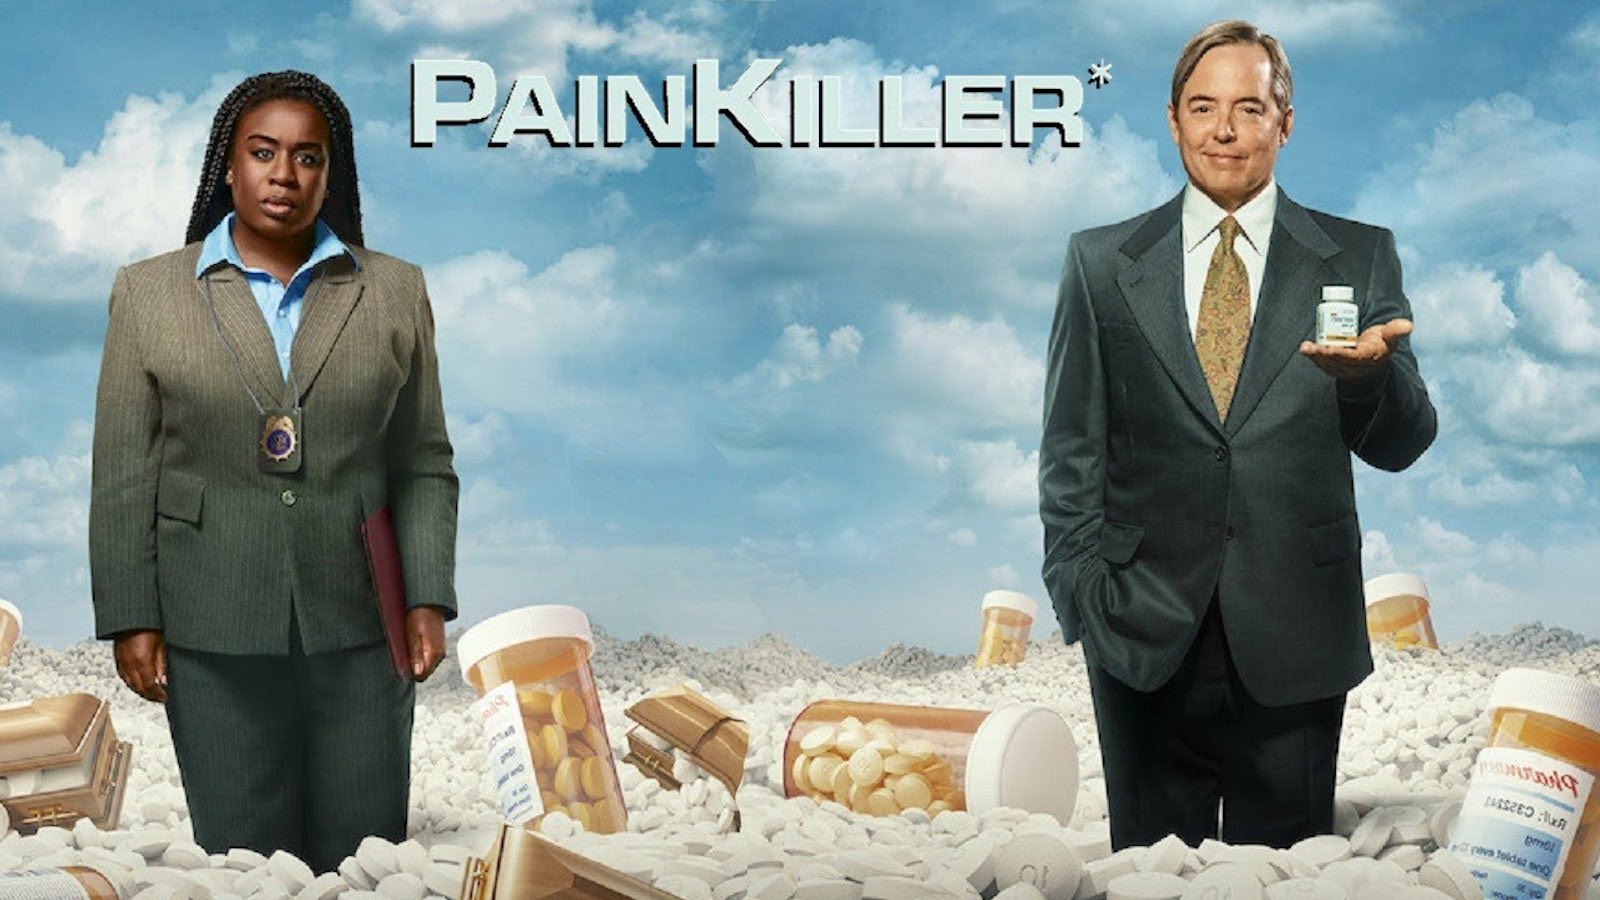 Painkiller: l'incubo dell'OxyContin nel trailer della nuova miniserie Netflix